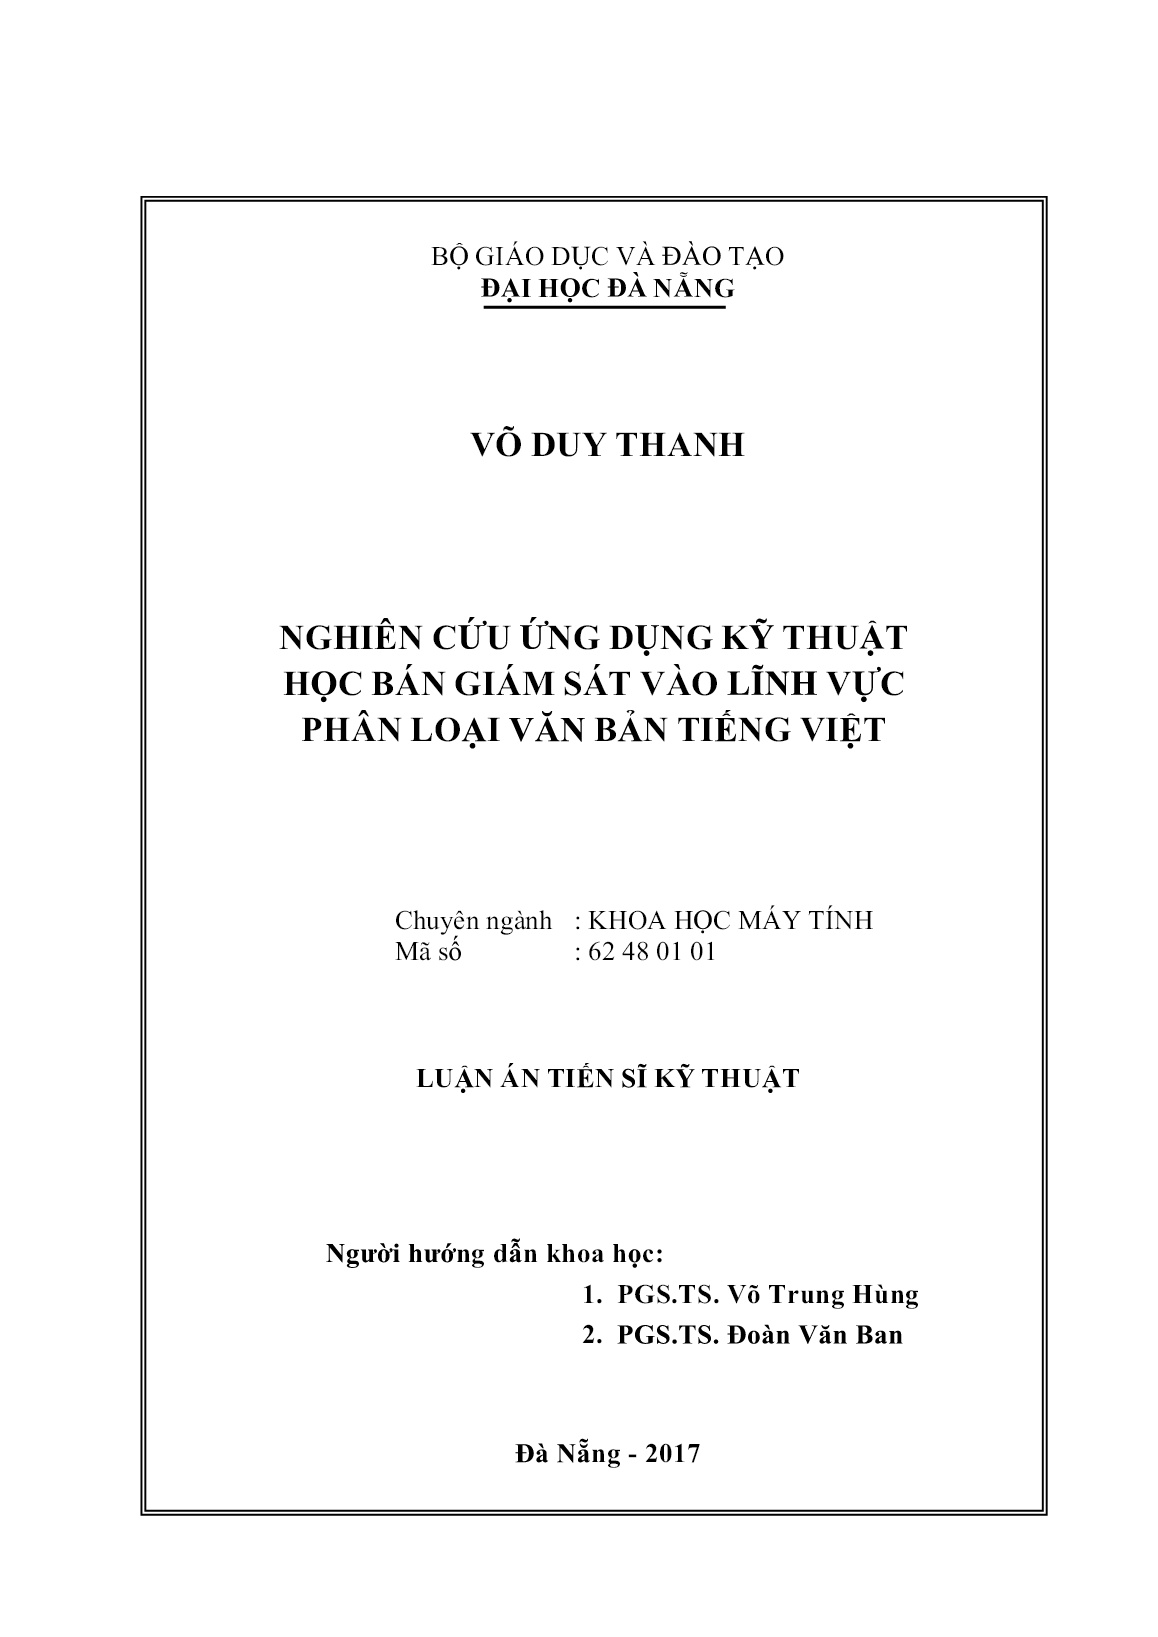 Luận án Nghiên cứu ứng dụng kỹ thuật học bán giám sát vào lĩnh vực phân loại văn bản tiếng Việt trang 2